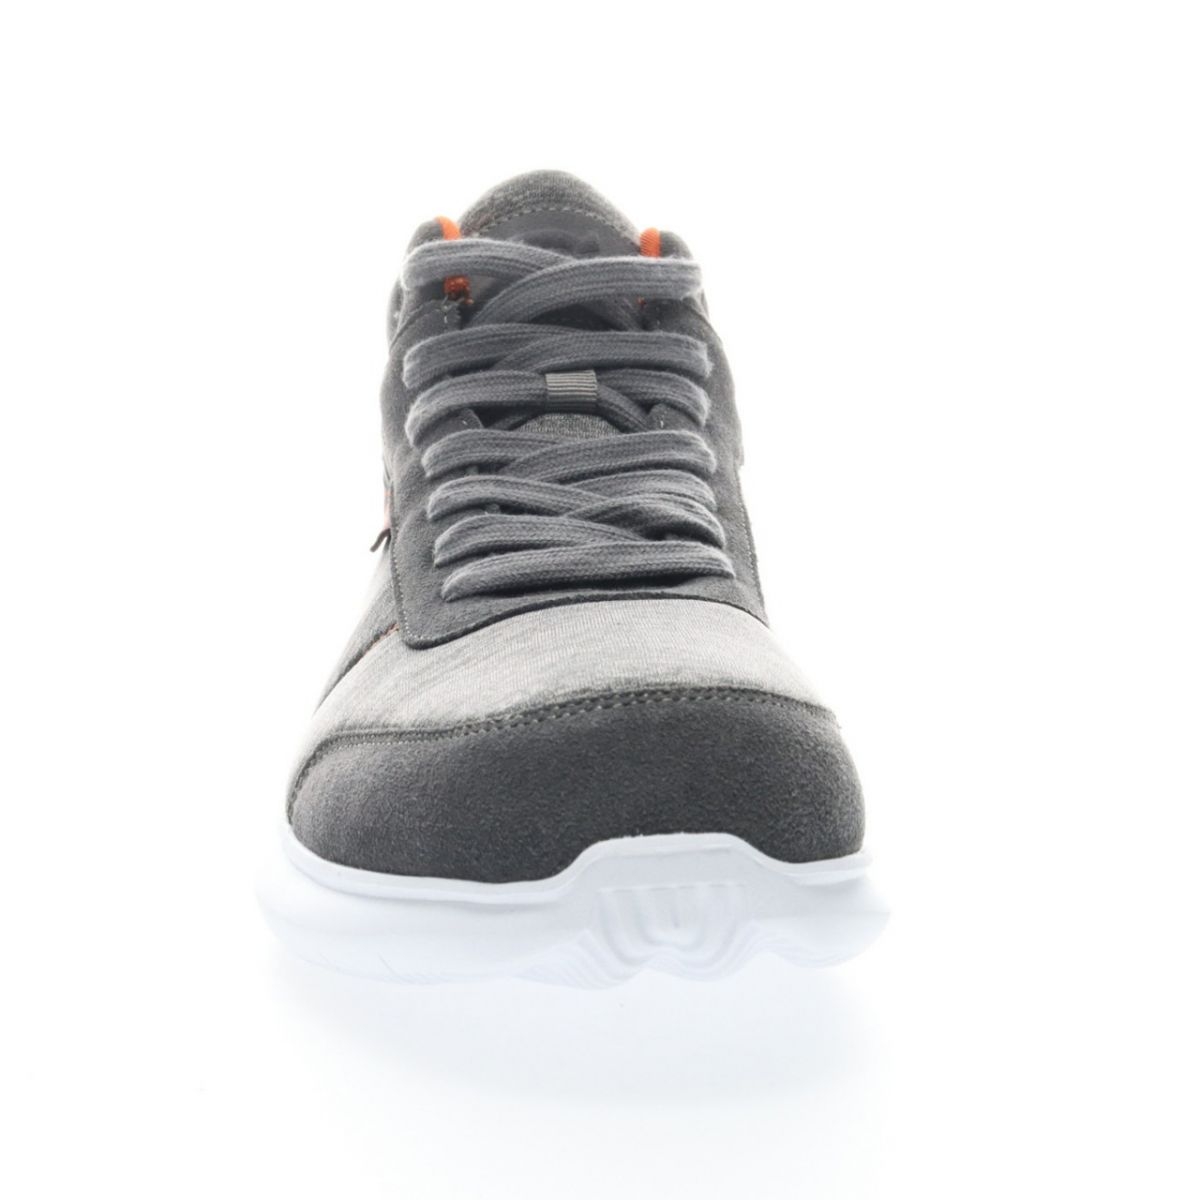 Propet Men's Viator Hi Sneaker Grey/Orange - MAA112MGOR Grey/orange - Grey/orange, 14 X-Wide